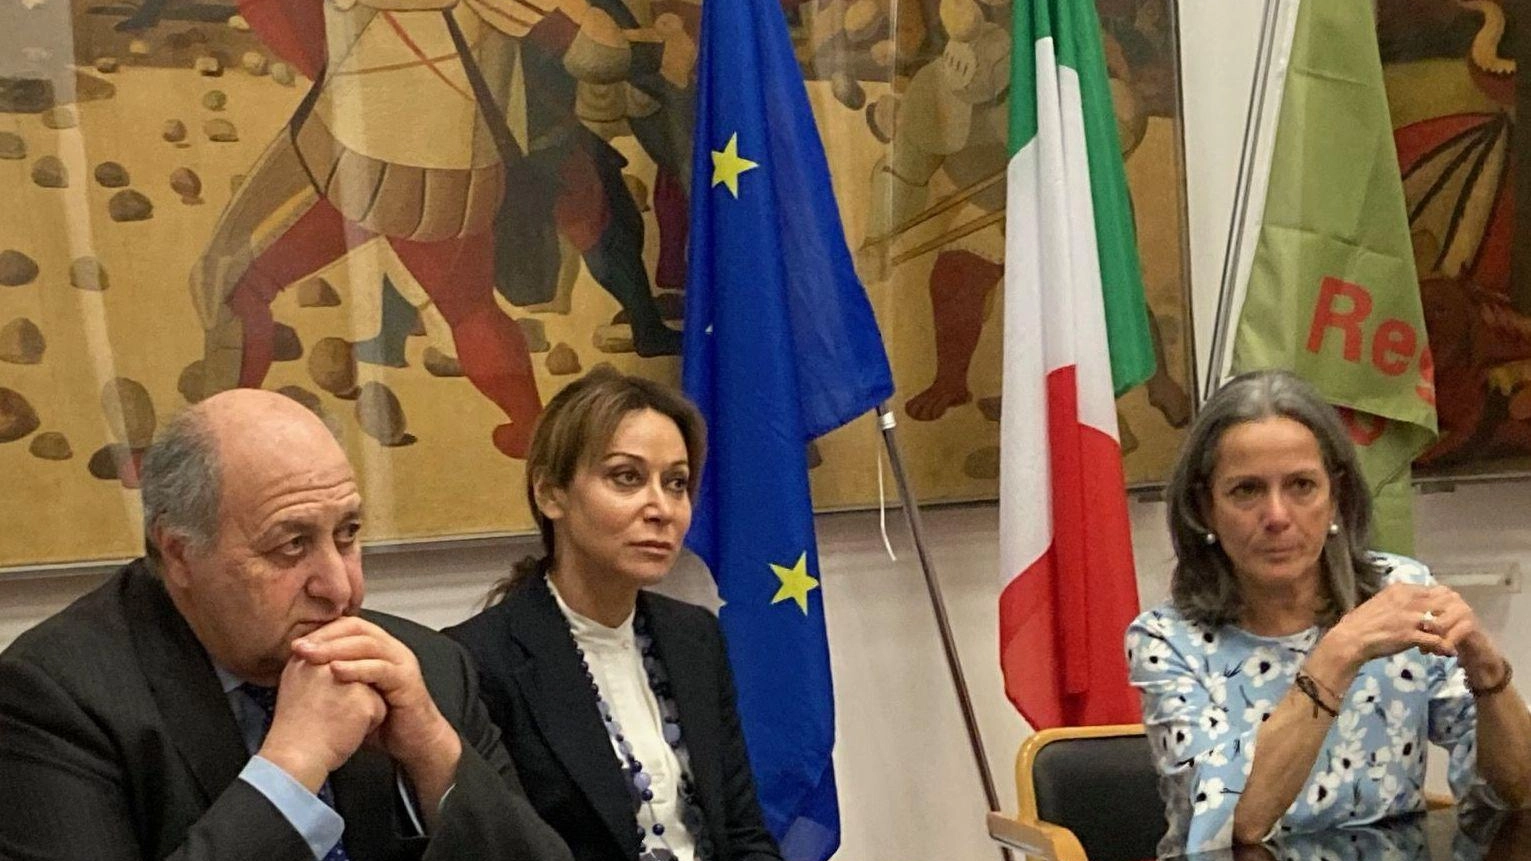 Sette comuni umbri vantano la bandiera Spighe Verdi, promuovendo la sostenibilità ambientale. A Perugia presentato il Questionario per ampliare il progetto.